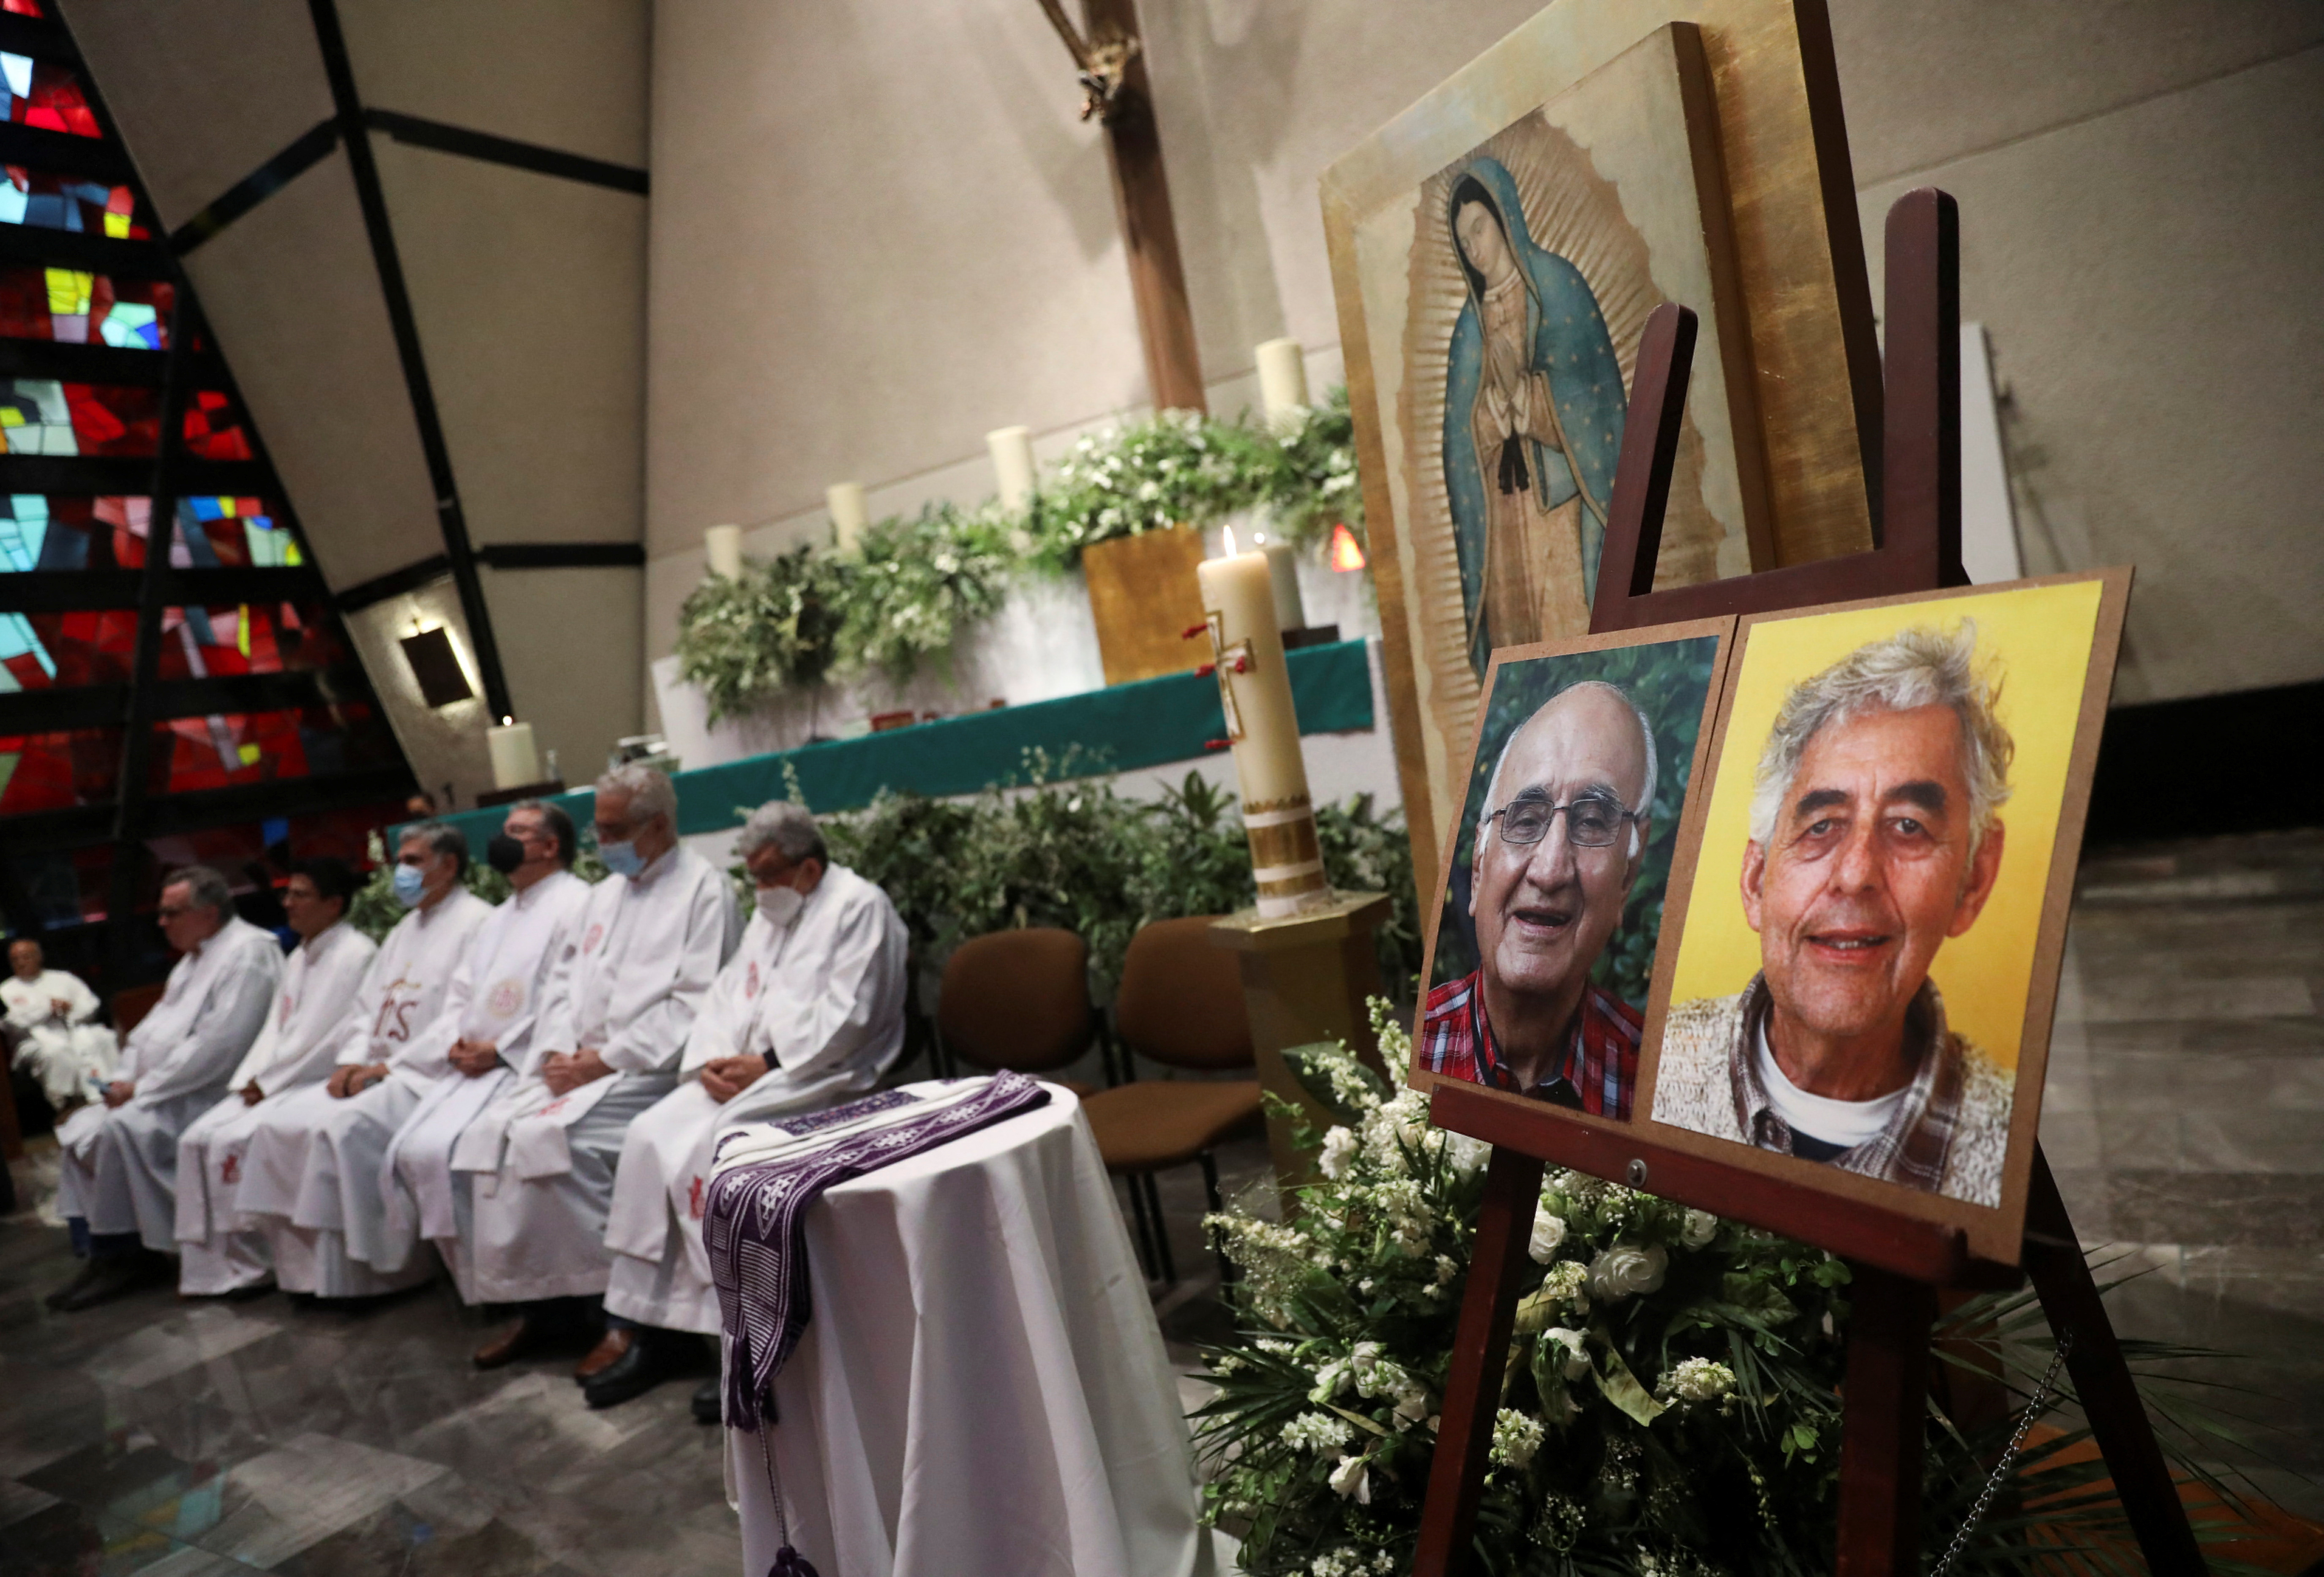 Los sacerdotes fueron asesinados cuando auxiliaban a una persona en inmediaciones de la iglesia (Foto: REUTERS/Edgard Garrido)